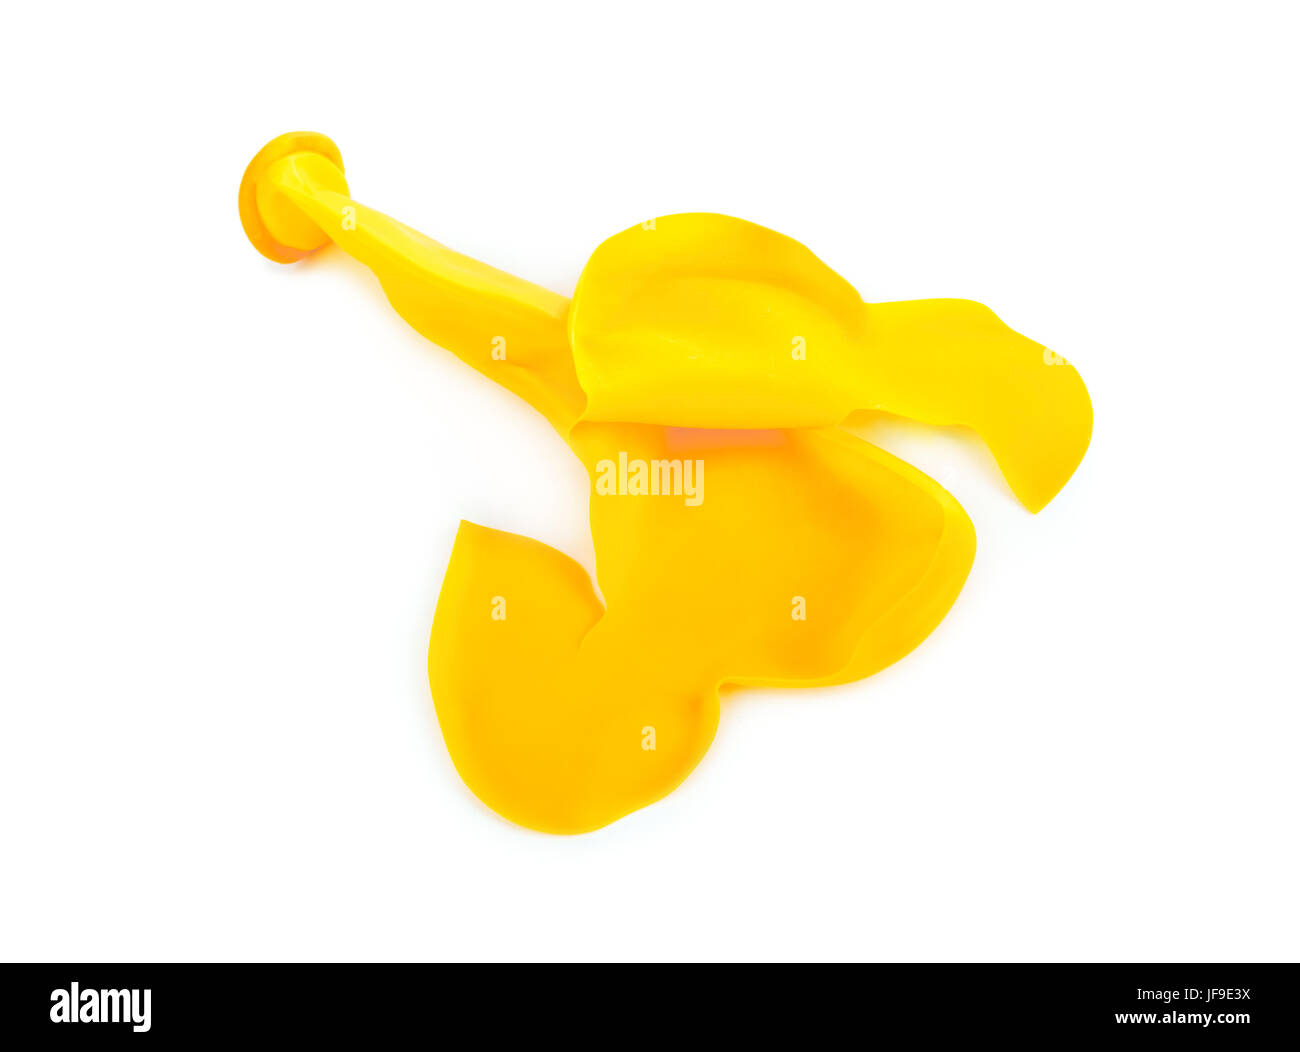 Geplatzten Luftballon Stockfotografie - Alamy